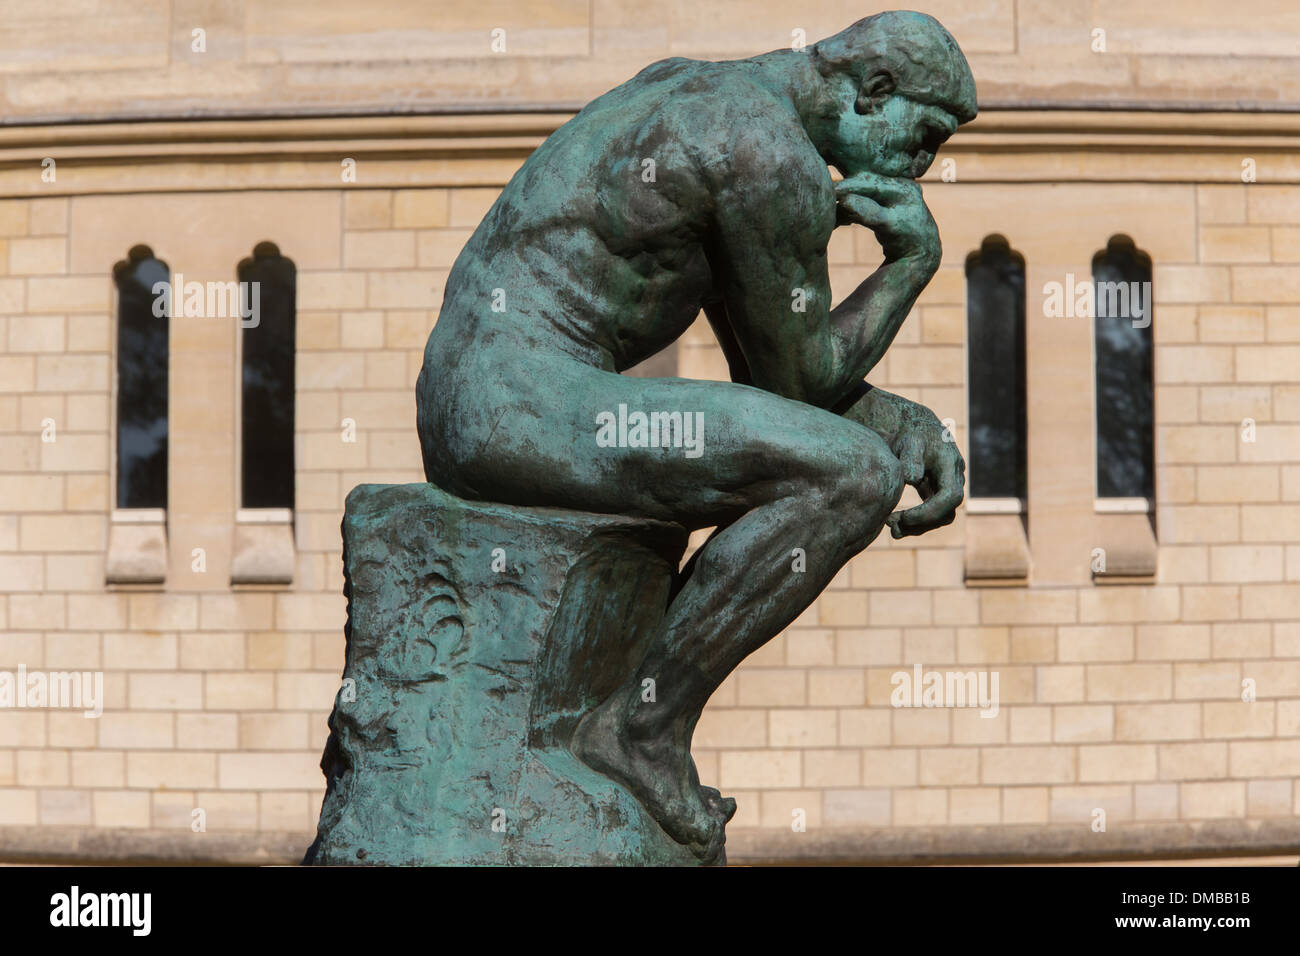 Le penseur d'Auguste Rodin DANS LES JARDINS DU MUSÉE, créé en 1916 par  Auguste Rodin, le musée Rodin EST SITUÉ DANS L'hôtel Biron, UN 18E SIÈCLE  HÔTEL PARTICULIER PRIVÉ, 7ème arrondissement, Paris (